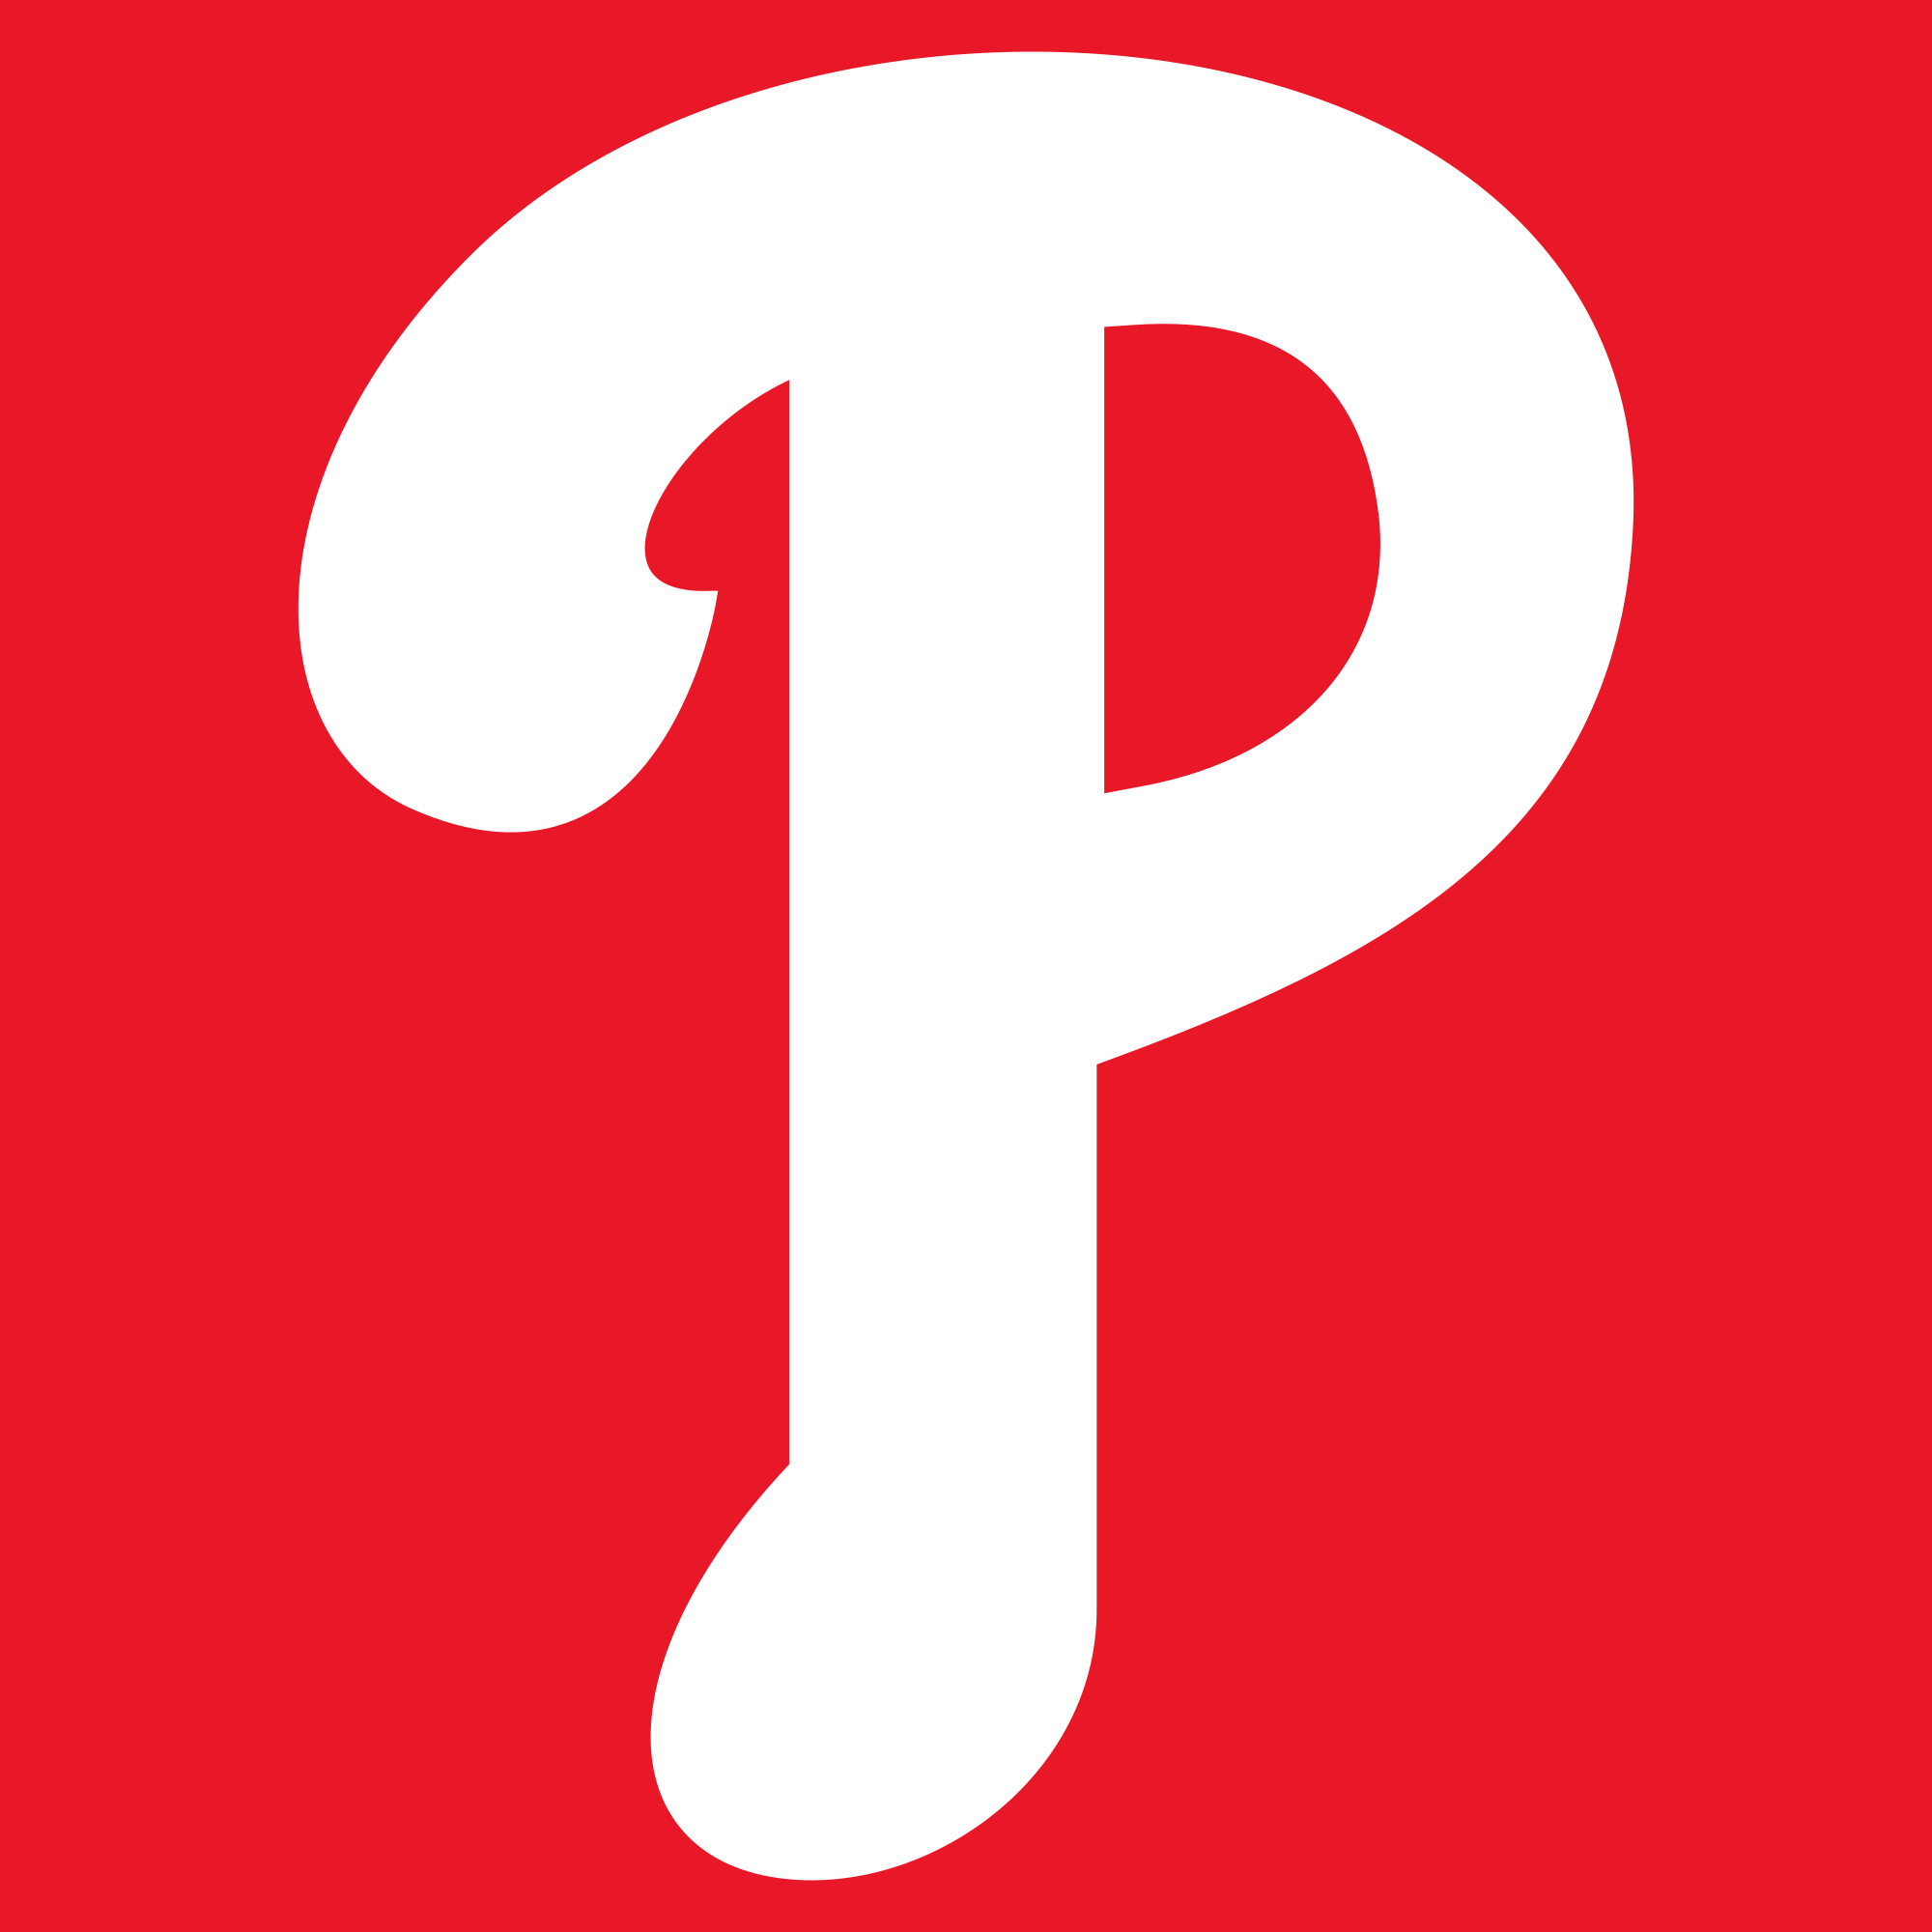 White Phillies Logo - 2018 Philadelphia Phillies season